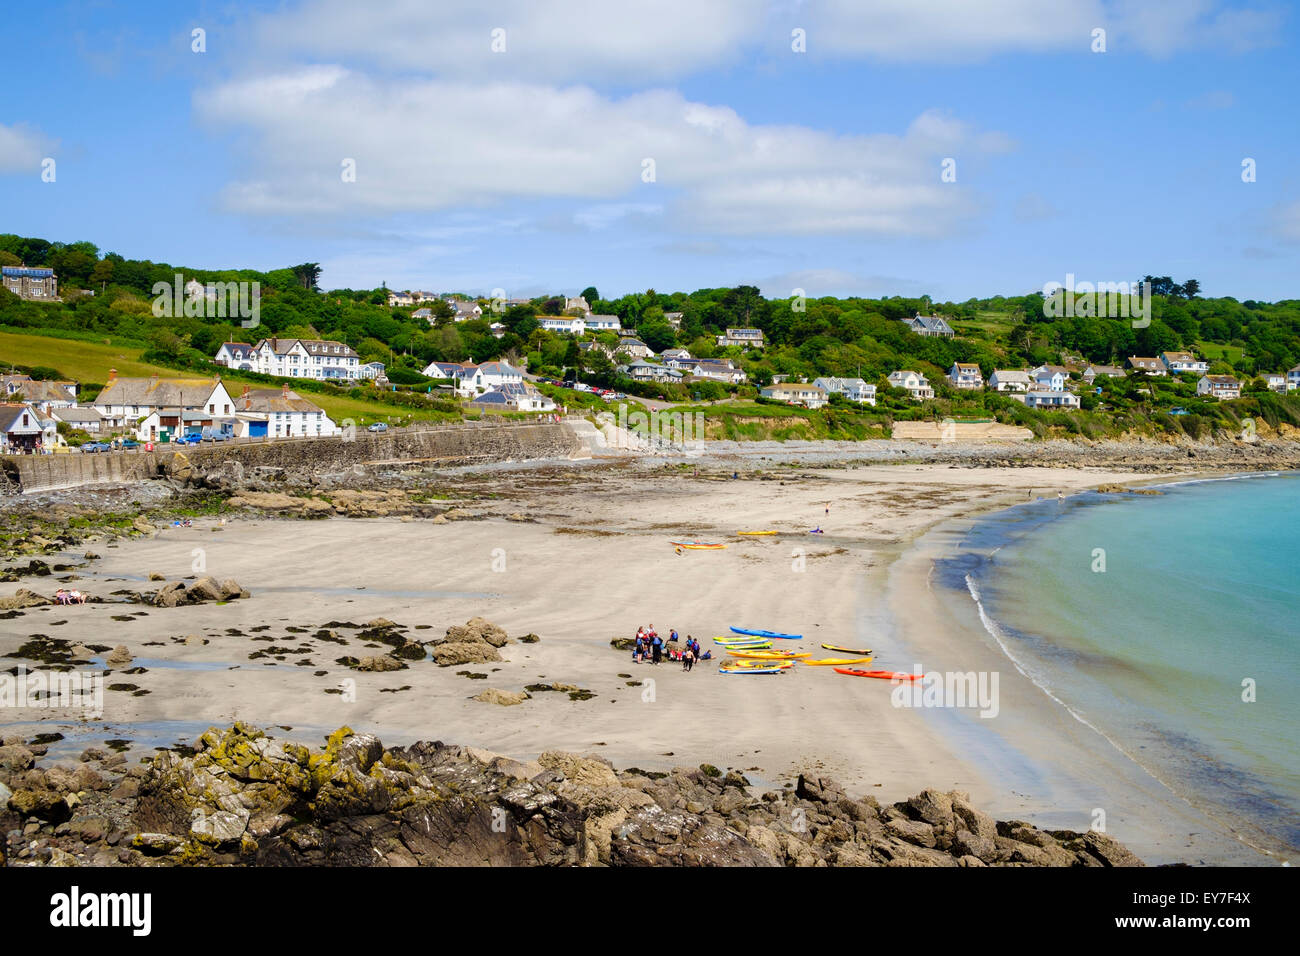 Menschen mit Kanus am Strand von Coverack, Halbinsel Lizard, Cornwall, England, UK Stockfoto